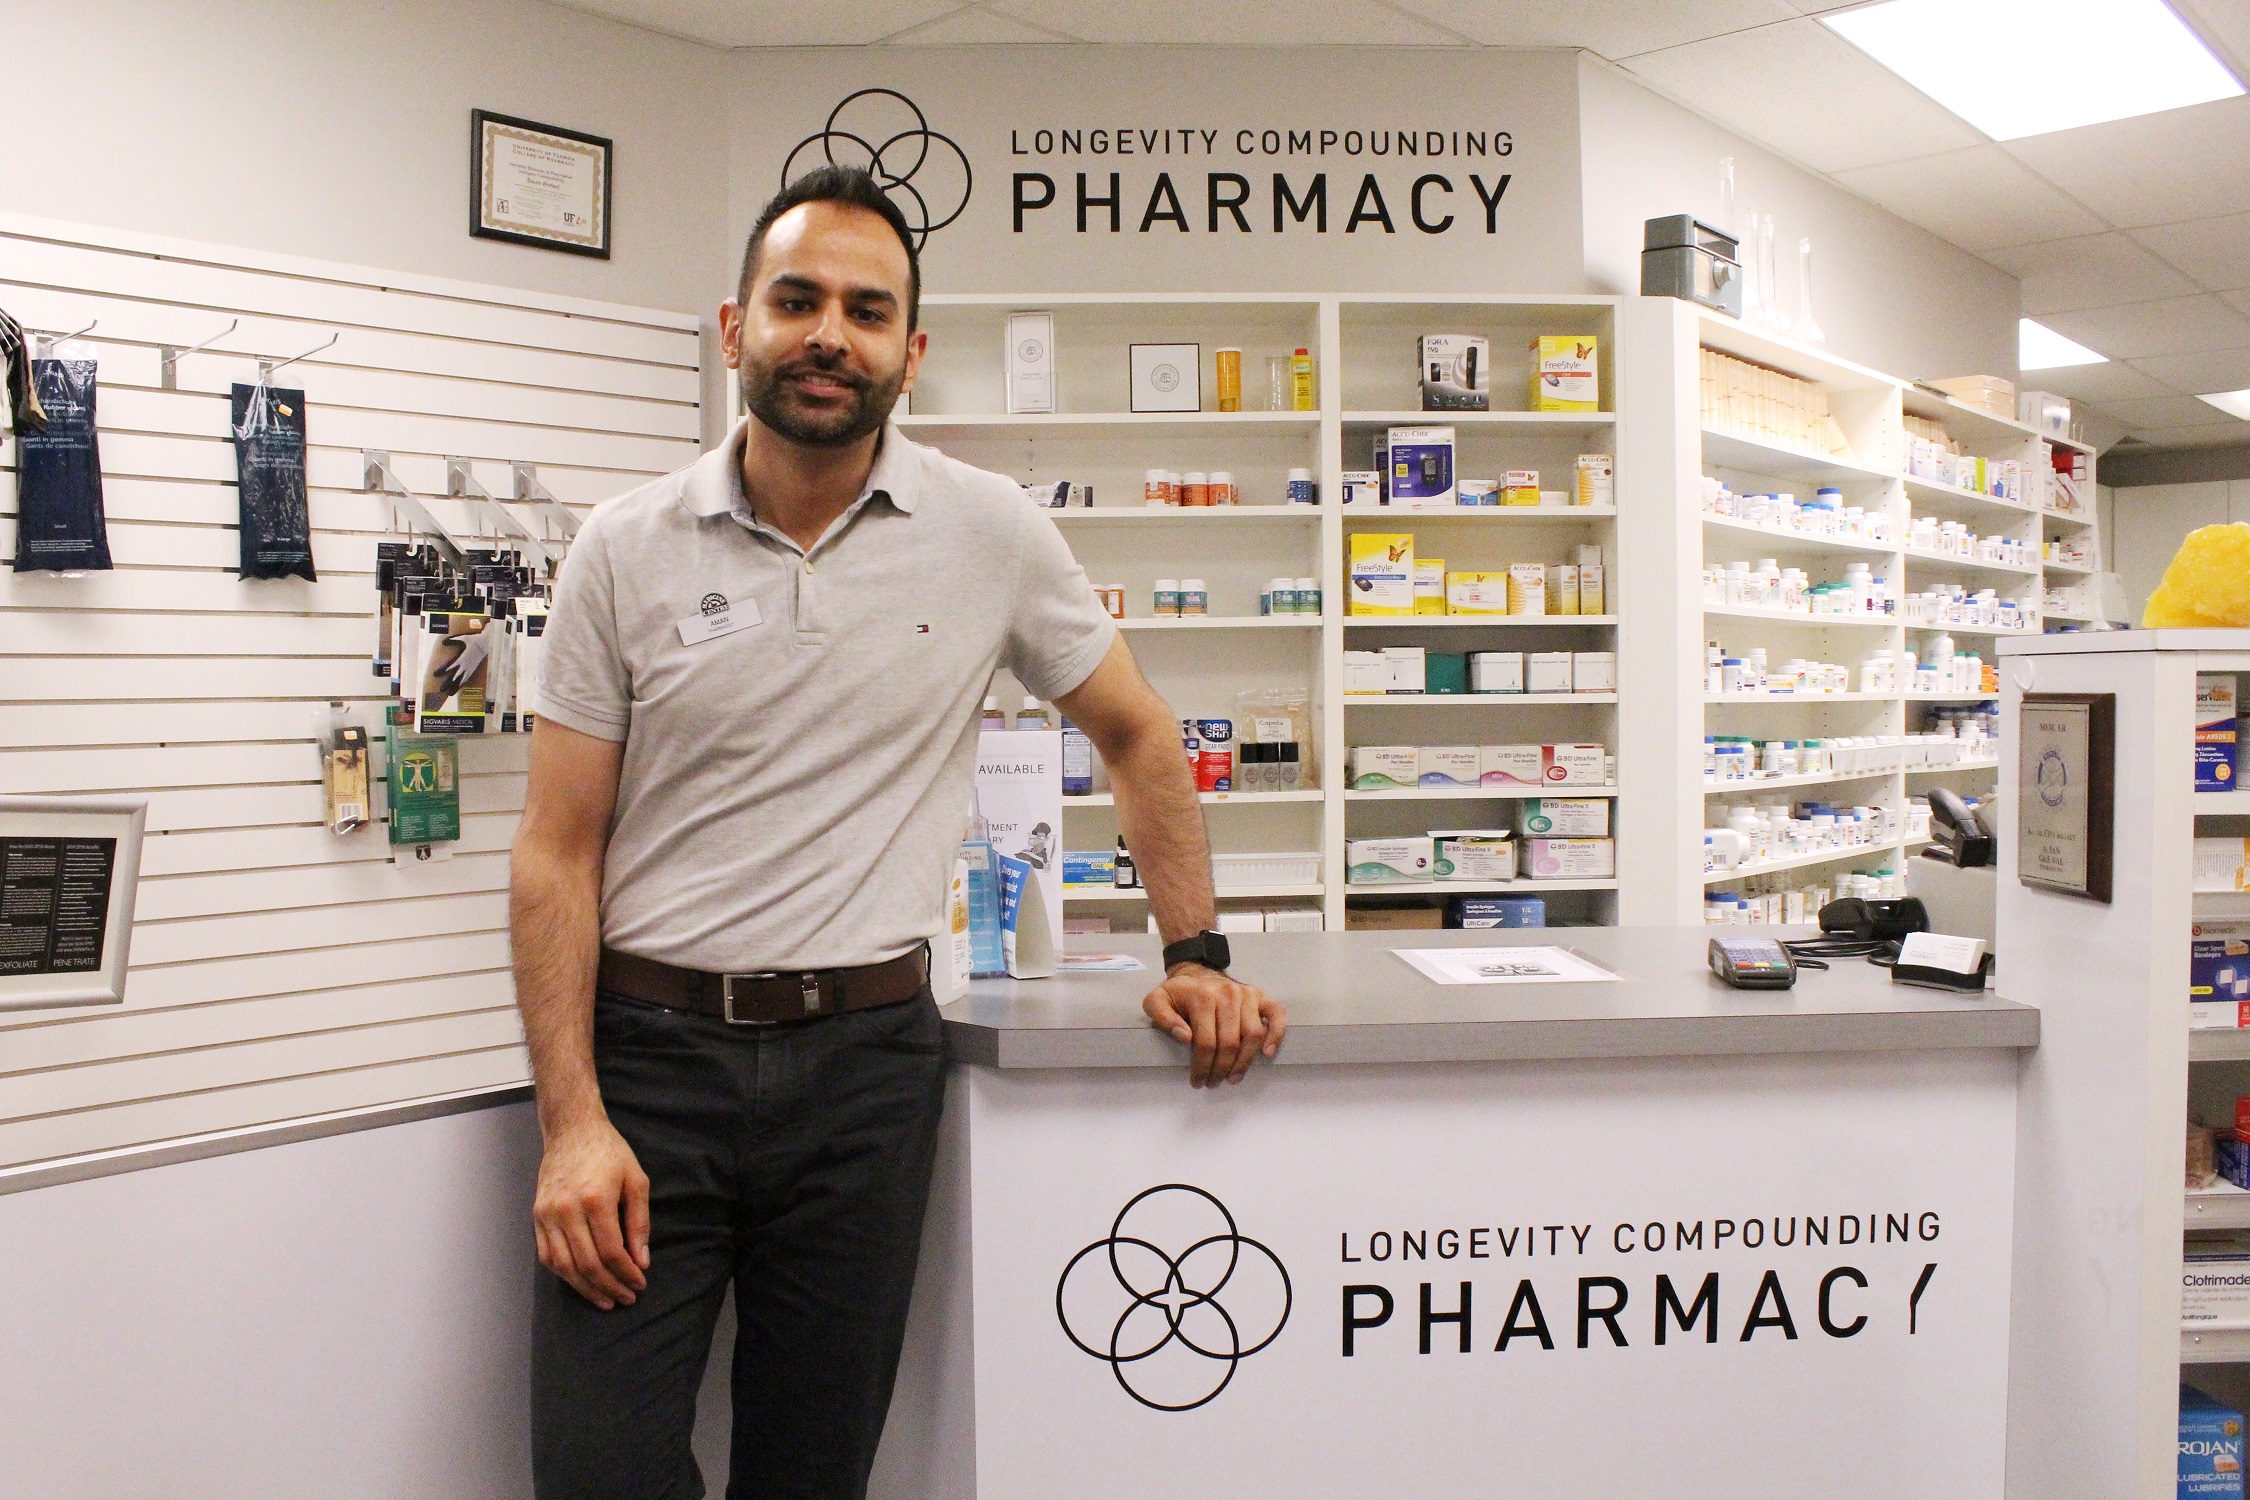 Longevity compounding pharmacy